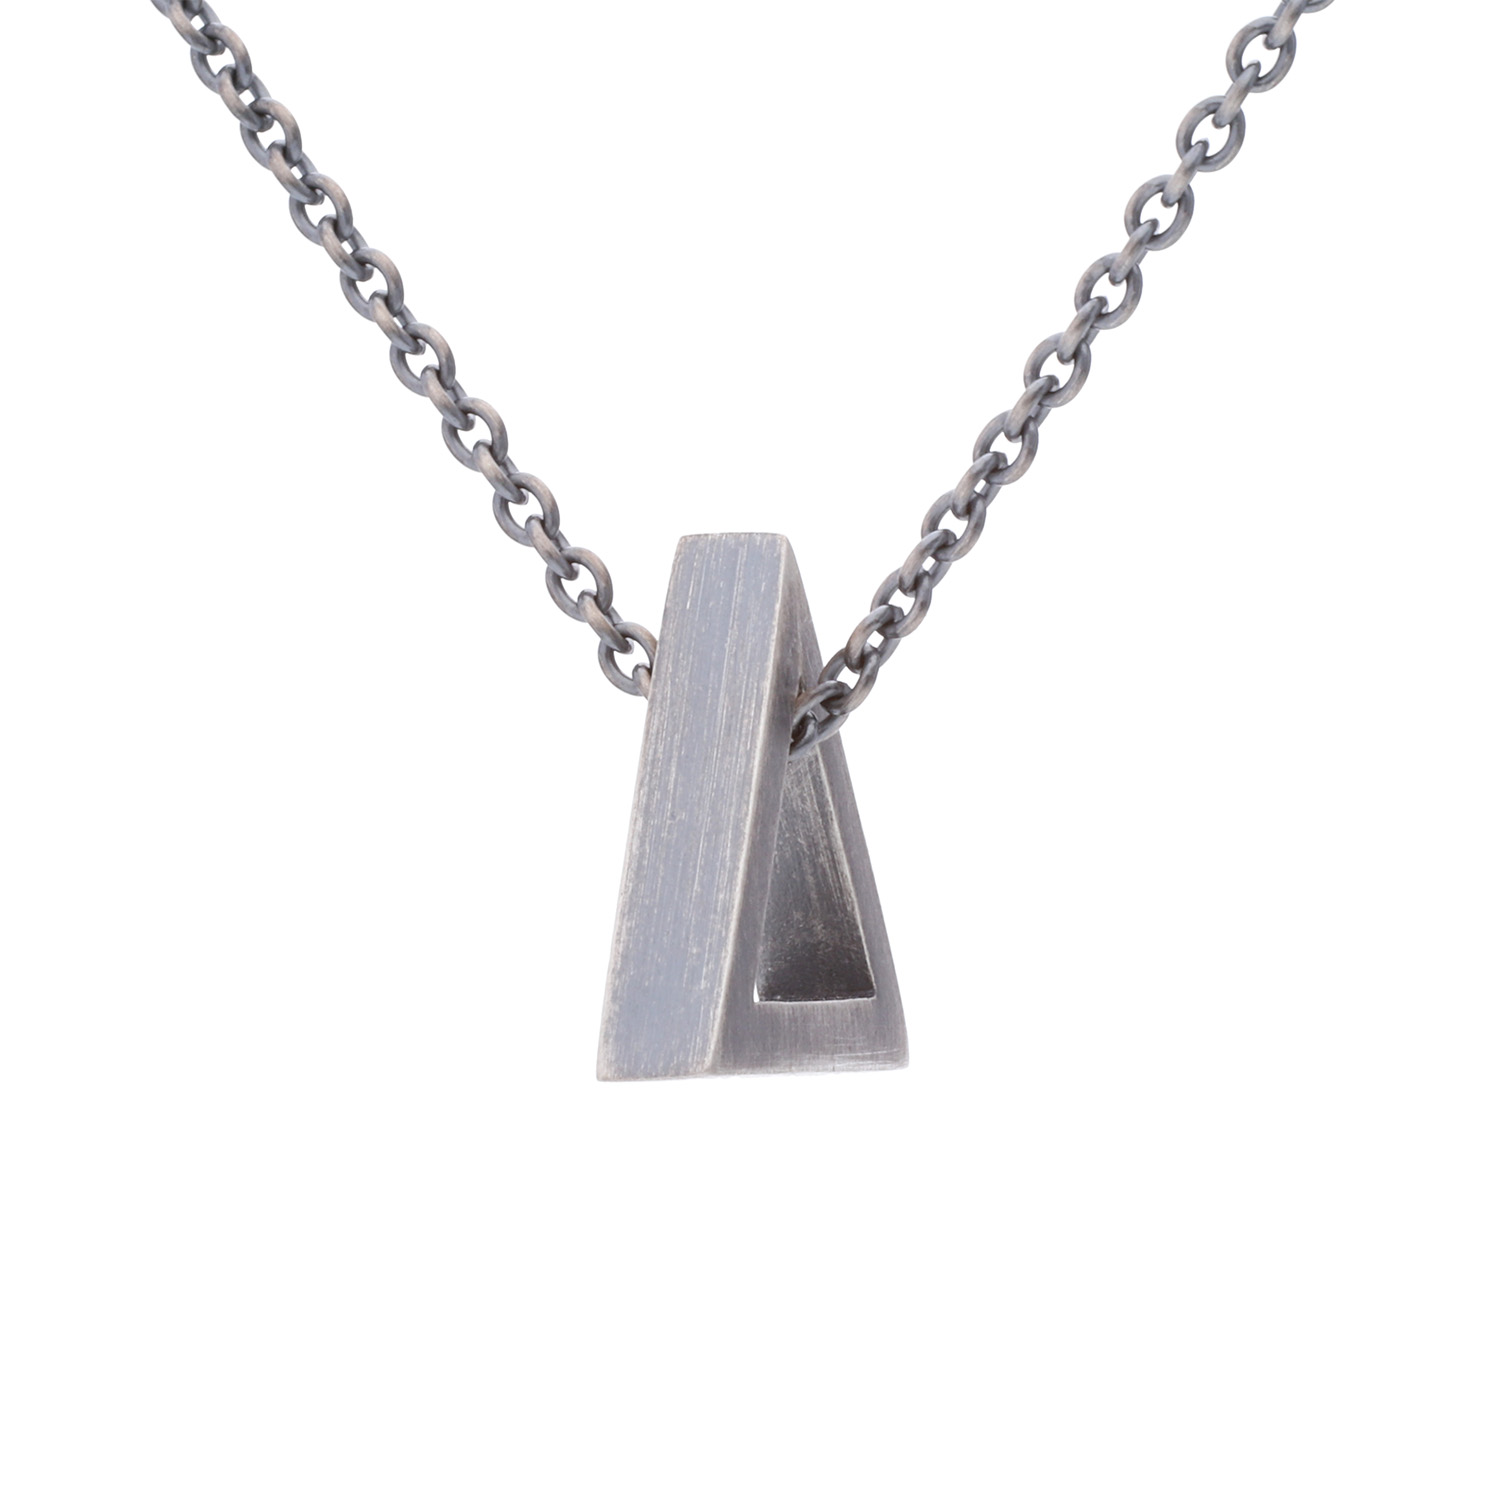 Kette Dreieck – 925 Silber oxidiert